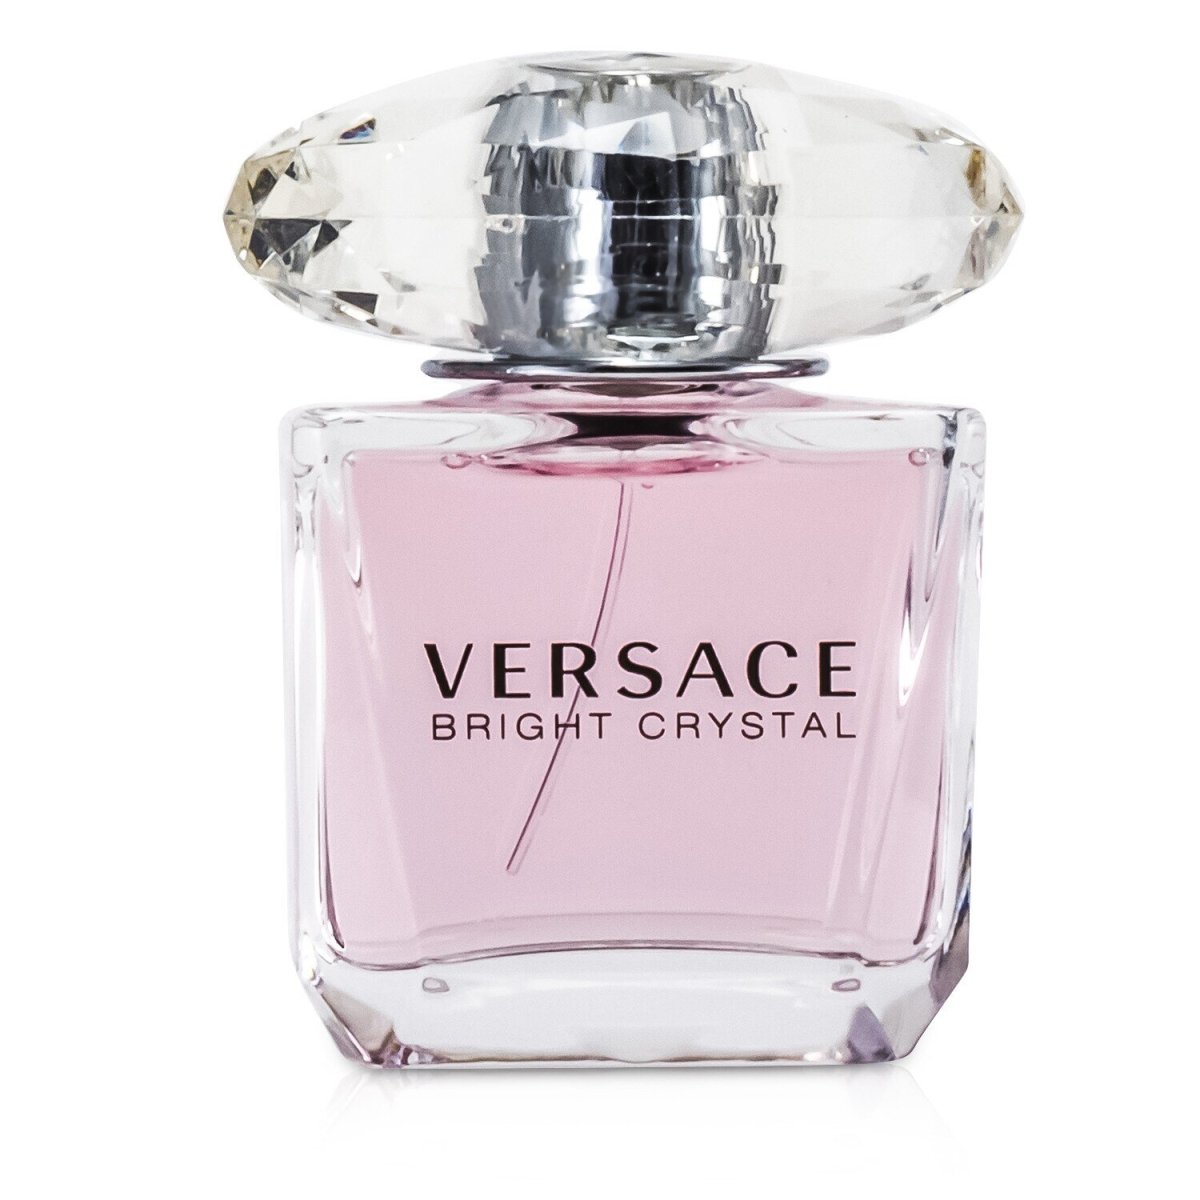 Picture of Versace 55063 1 oz Women Bright Crystal Eau De Toilette Spray